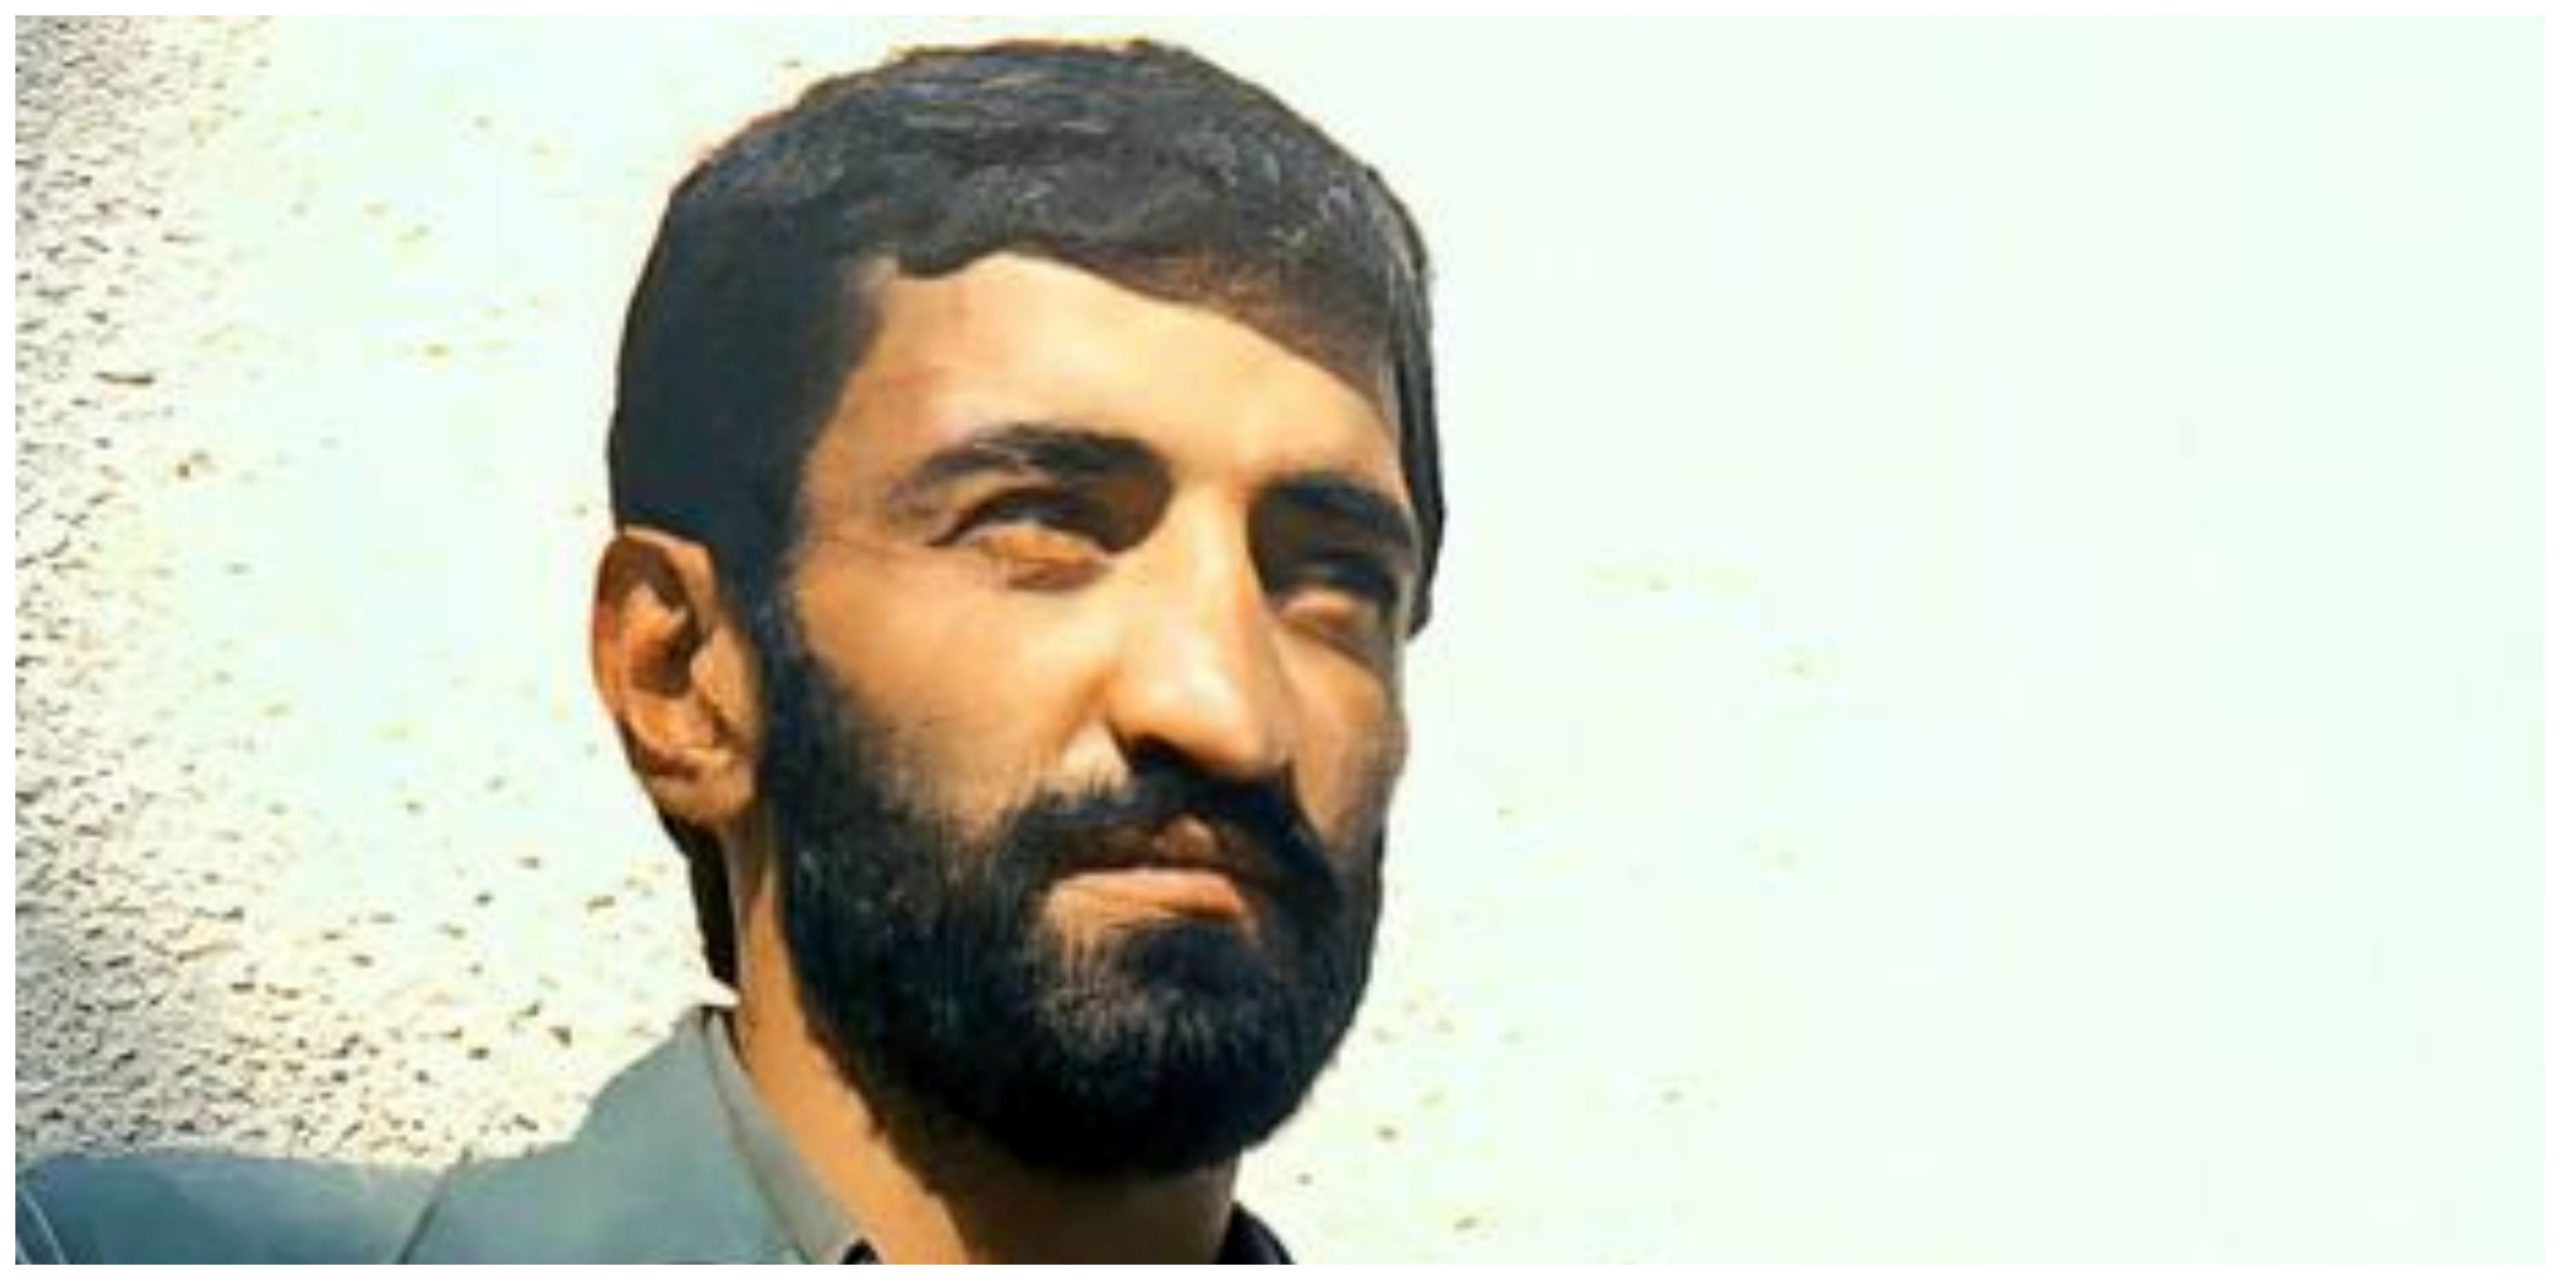 اعلام رسمی خبر شهادت حاج احمد متوسلیان پس از ۴١سال